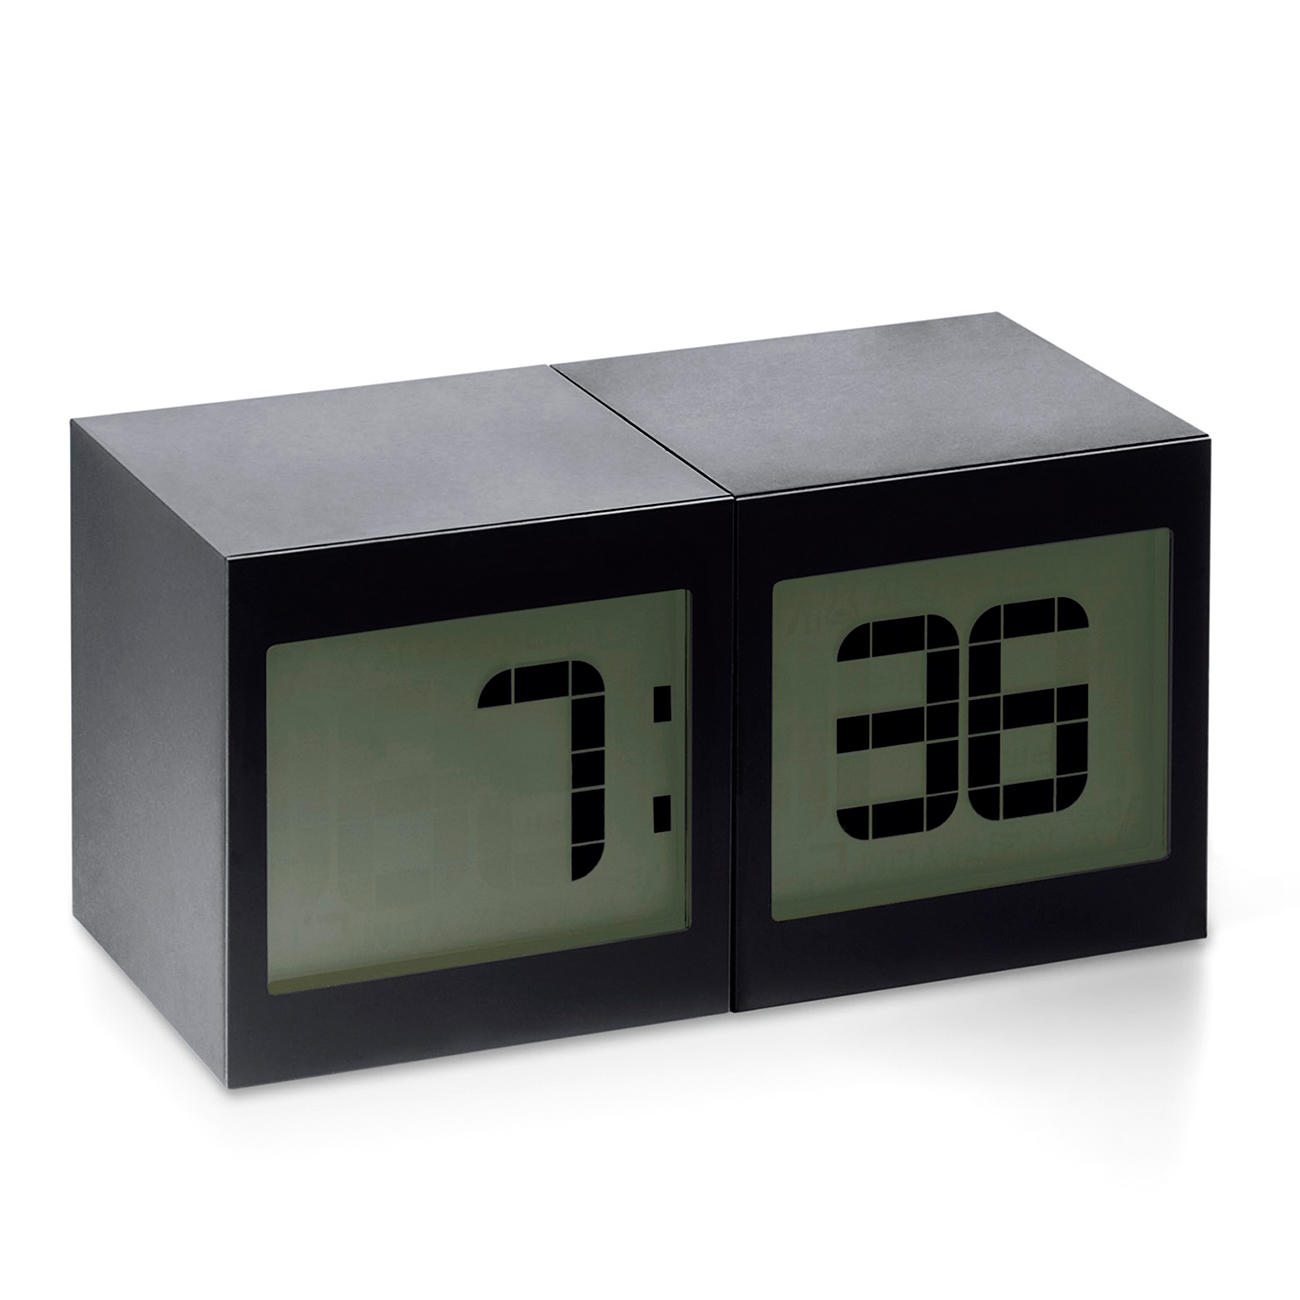 Magic Cube Clock | 3-year product guarantee